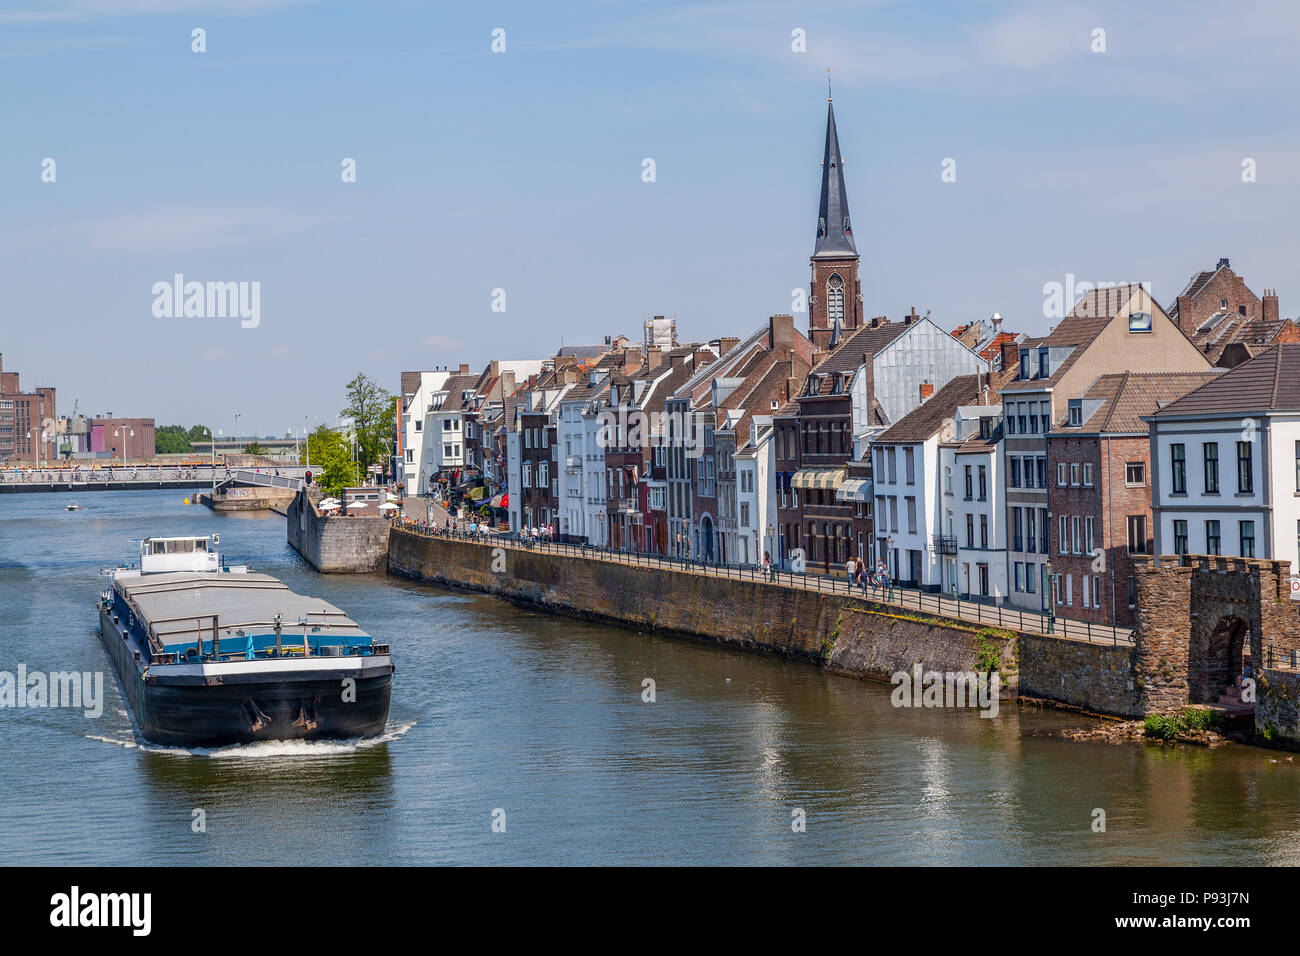 Frachtschiff auf der Maas in Maastricht, Niederlande Foto Stock